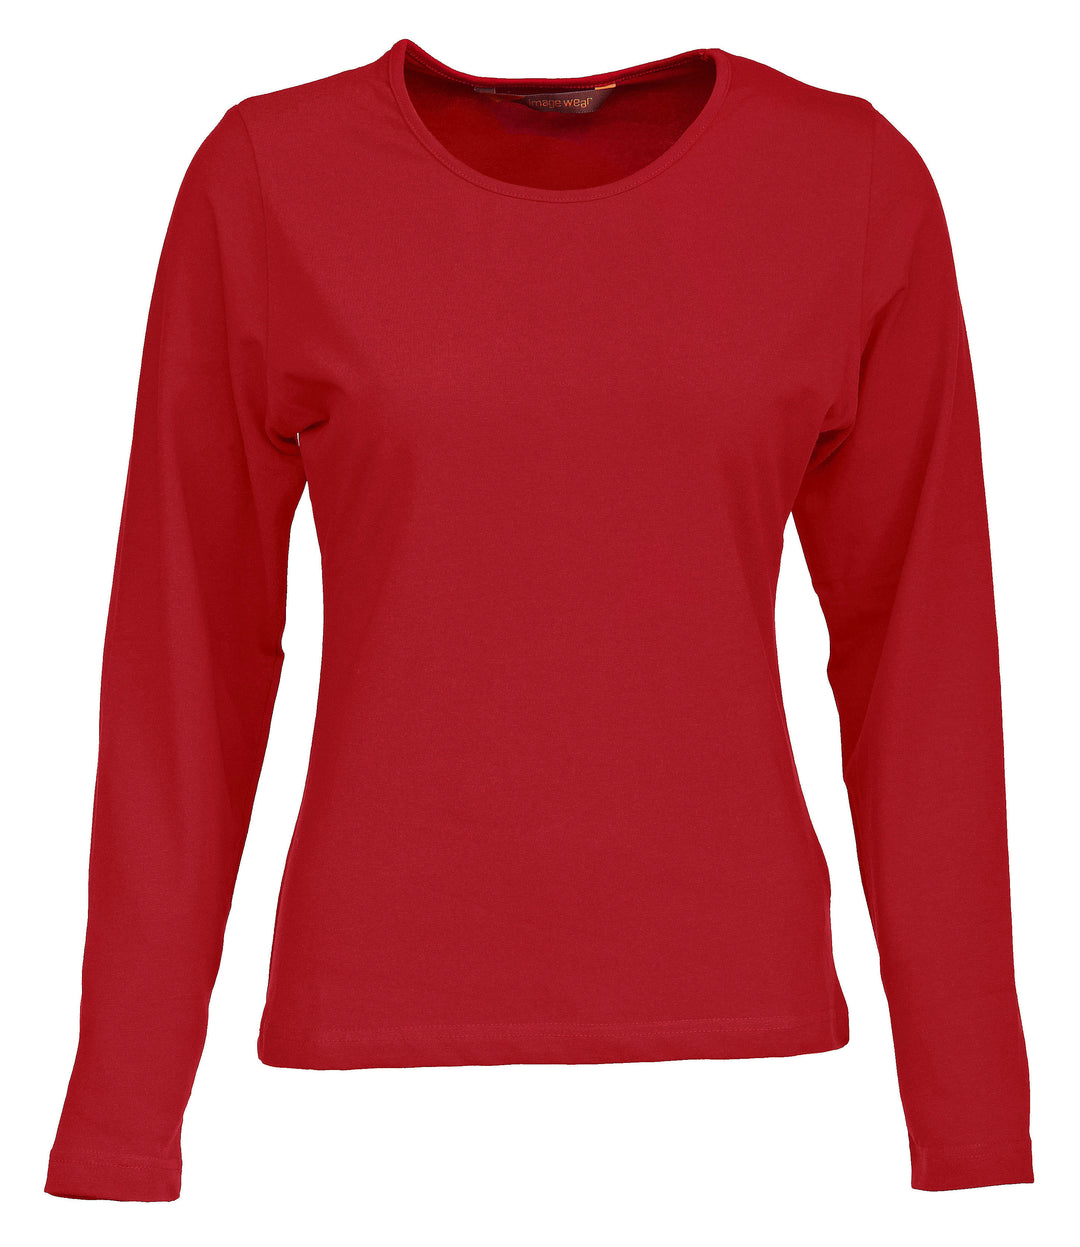 Punainen värinen naisten pitkähihainen paita. Joustavaa trikoomateriaalia. Hieman vartalonmyötäinen. O-pääntie.